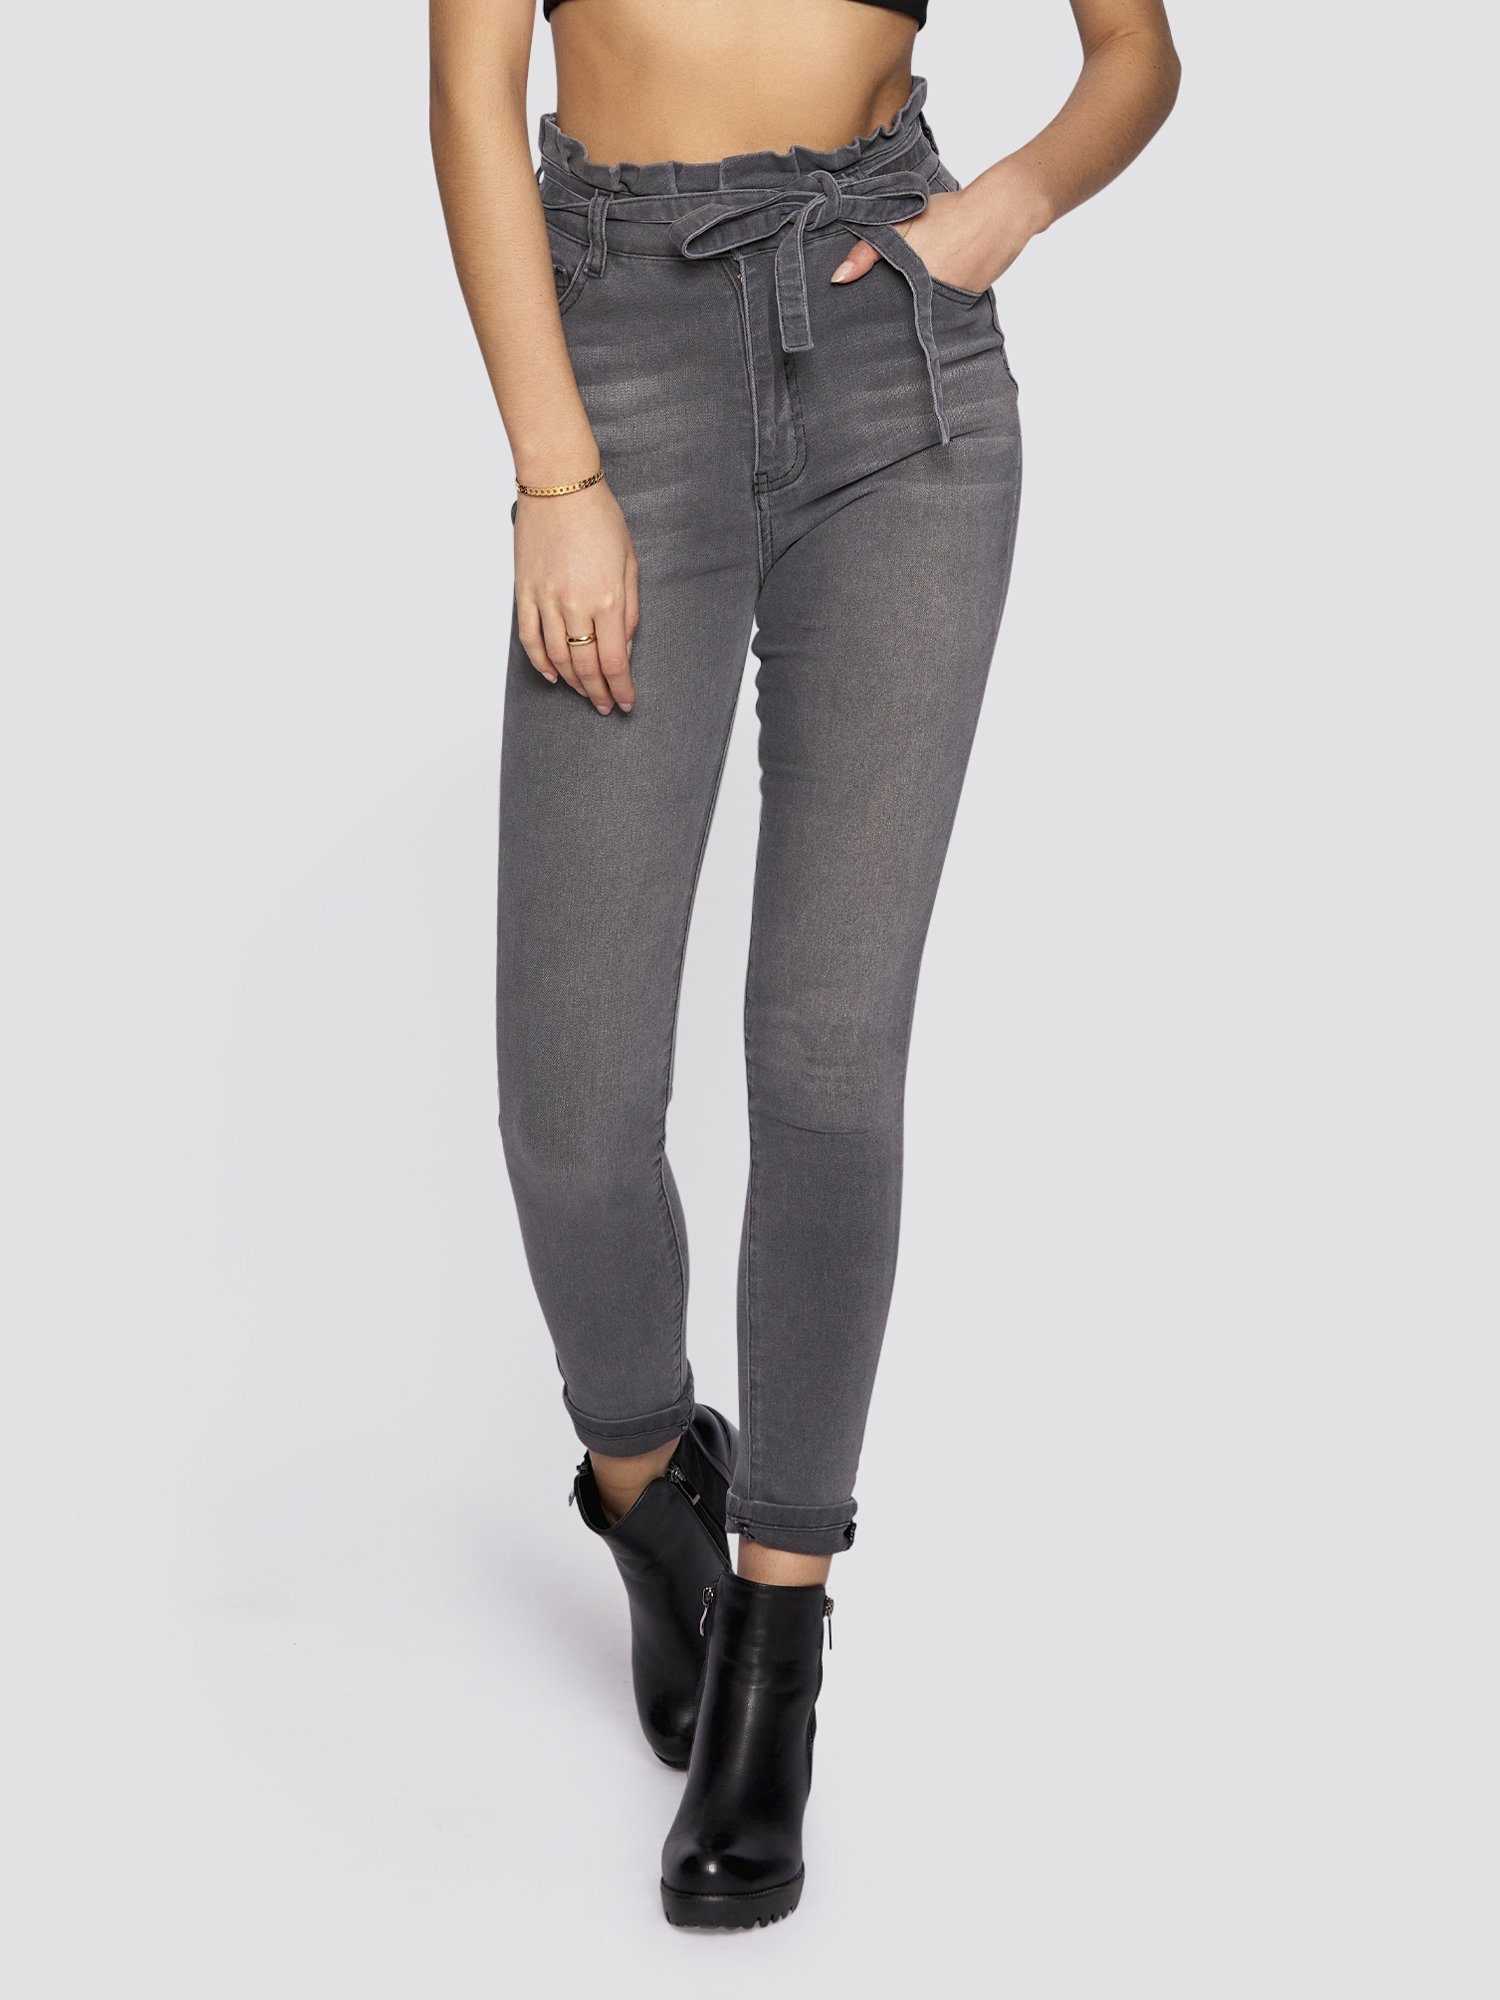 Freshlions High-waist-Jeans Jeans mit Bindegurt grau